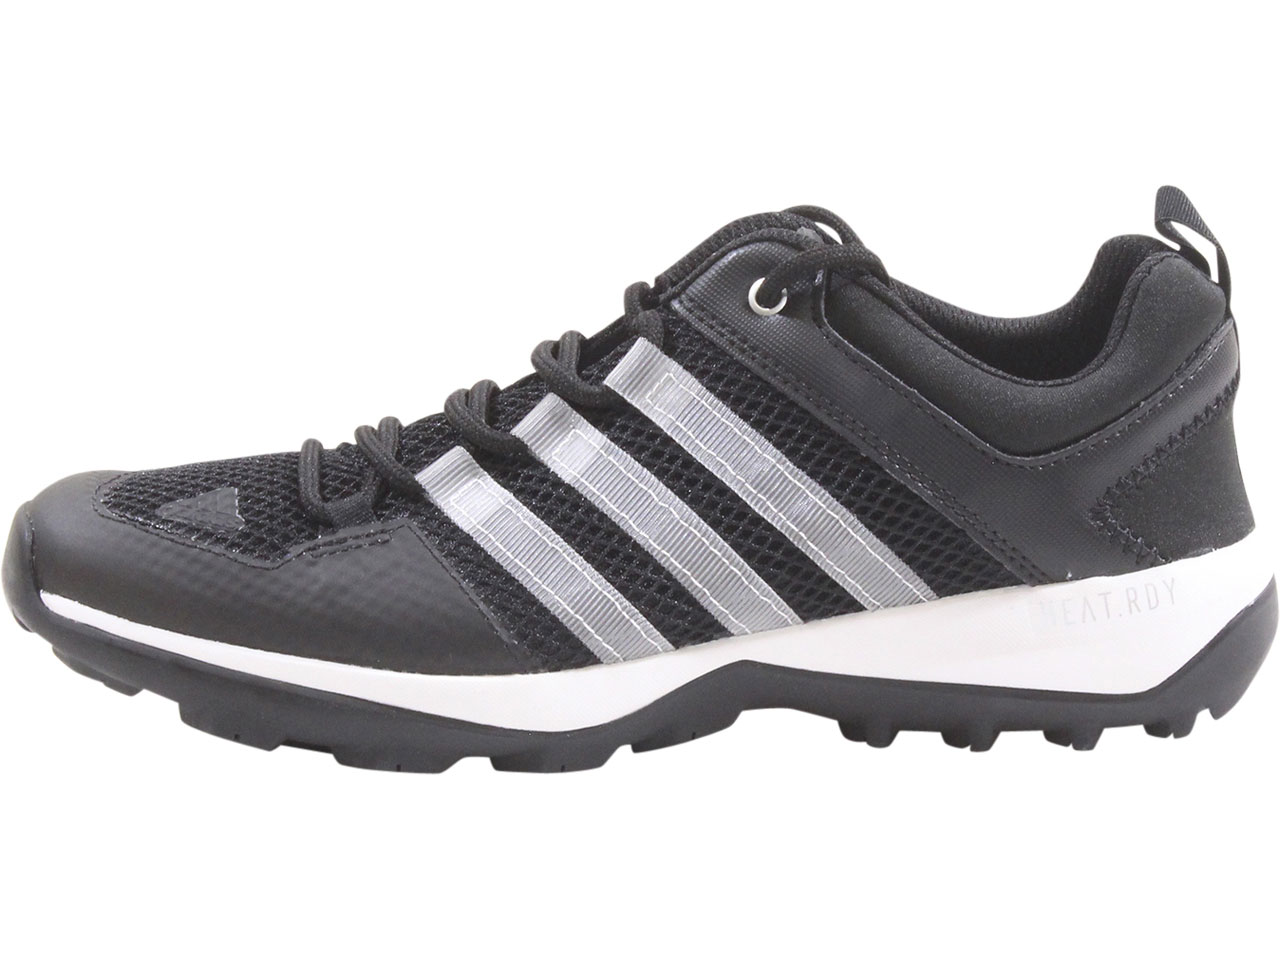 Men's Daroga-Plus-H.RDY Sneakers Hiking Core Black/White/Silver 10.5 | JoyLot.com